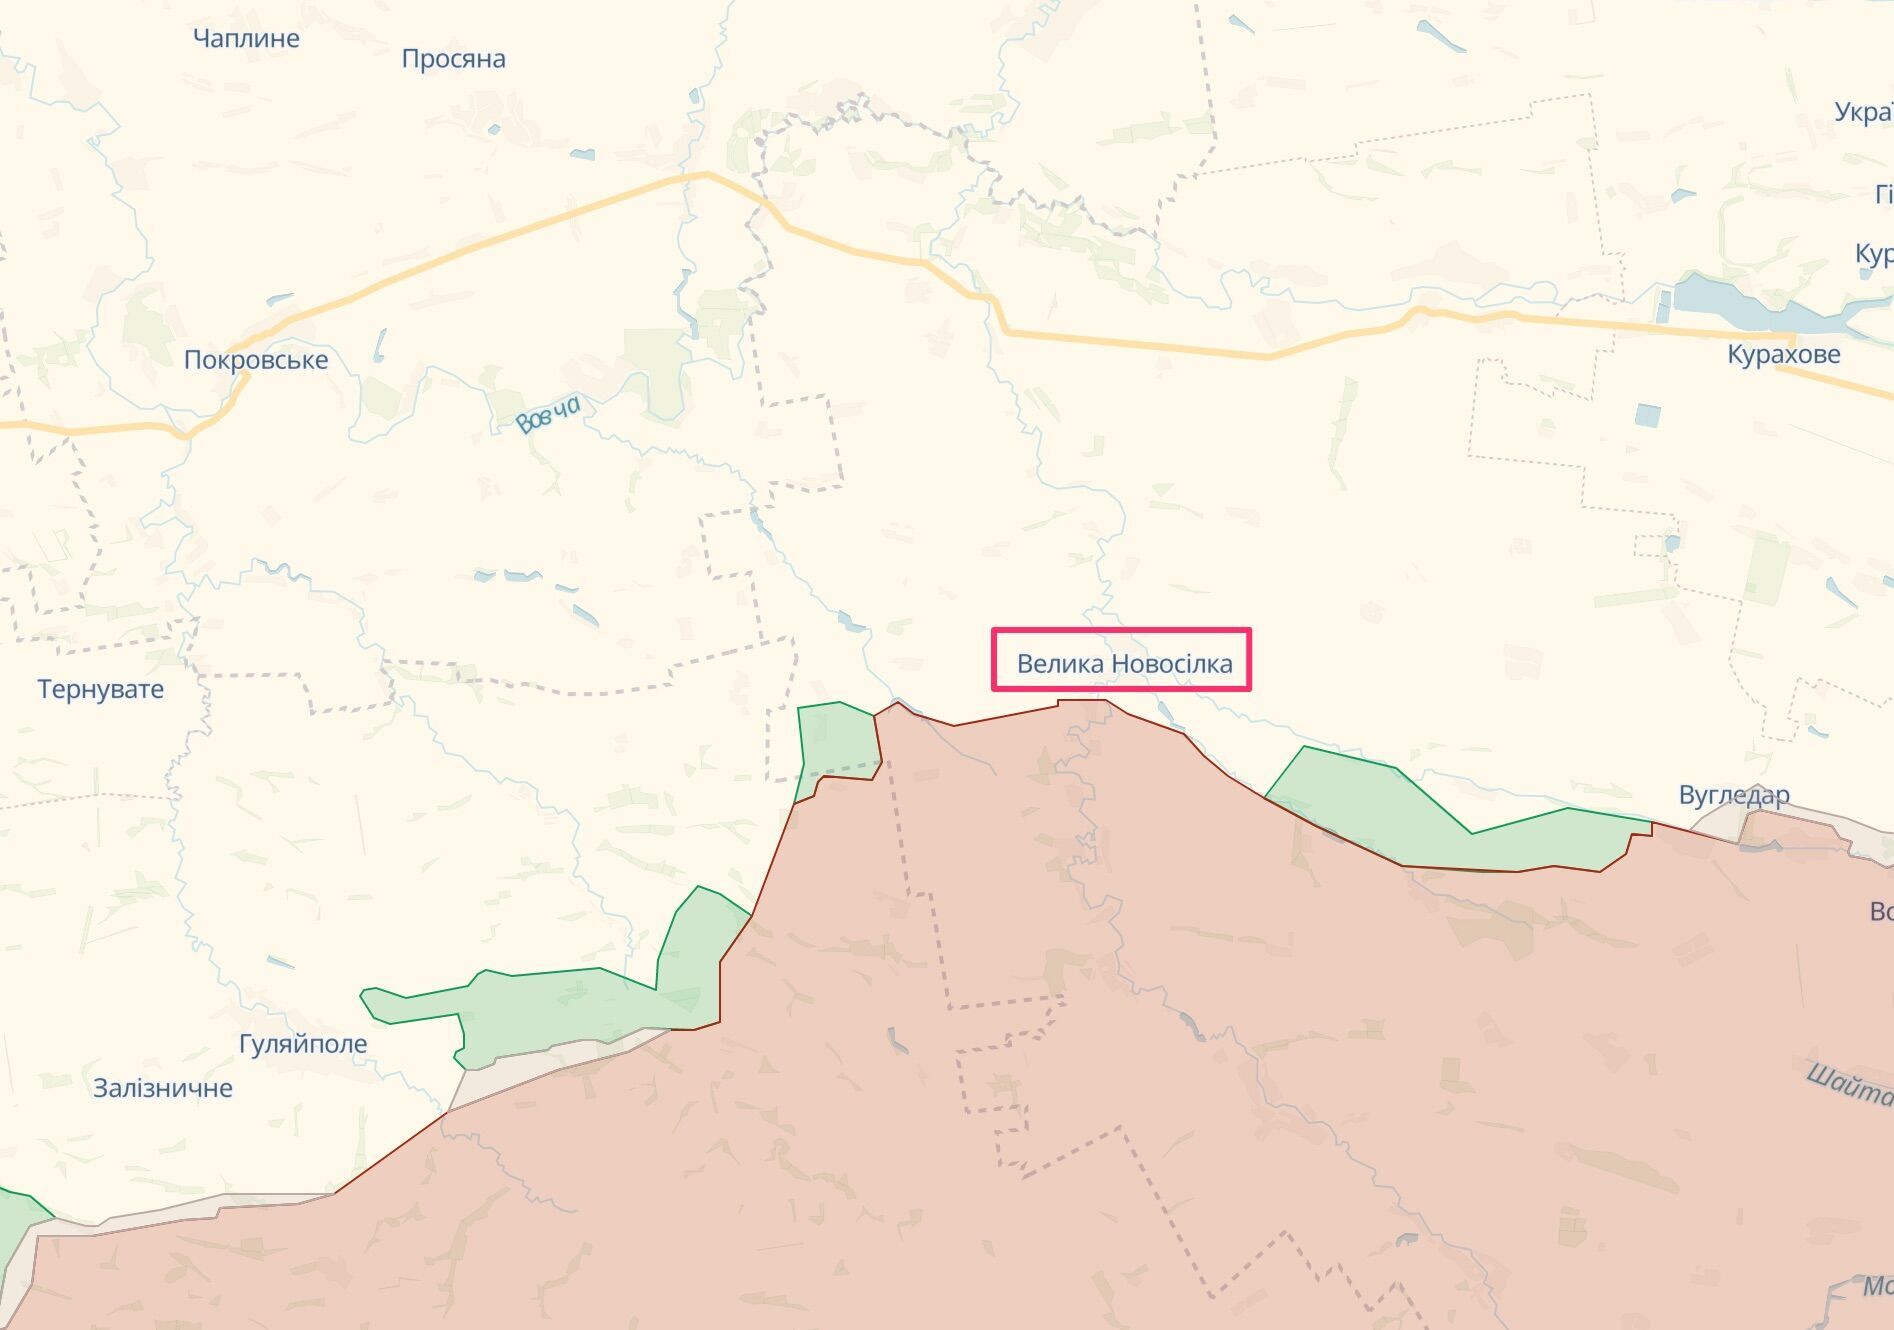 Большая Новоселка – важный узел на границе трех областей и стыке двух фронтов (Донецкого и Запорожского)